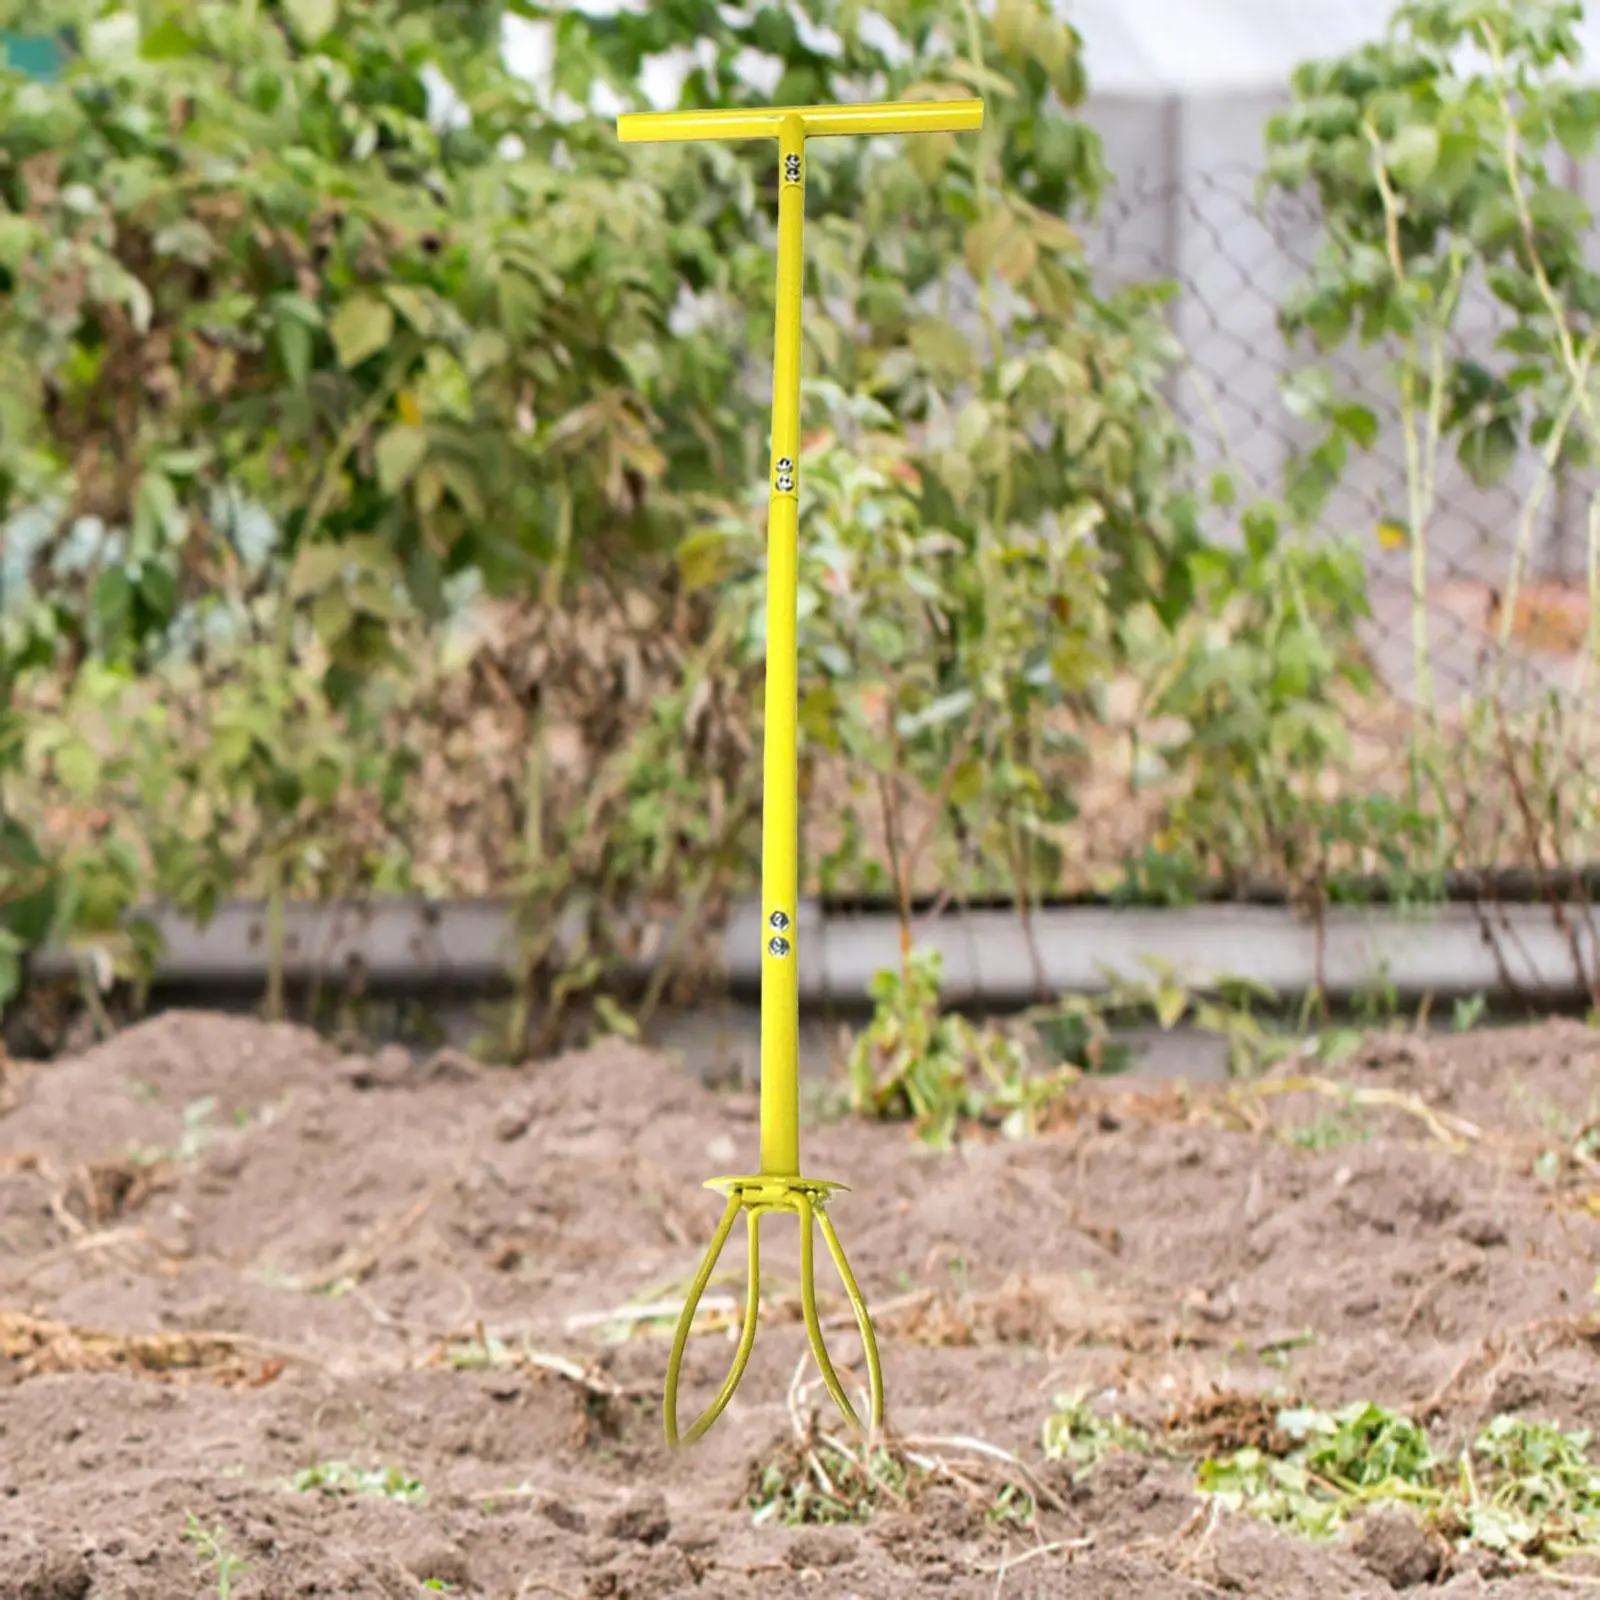 Manual Hand Tiller for Narrow and Wide Areas No Bending Twist Tiller Agriculture Garden Soil Tiller Adjustable Handle